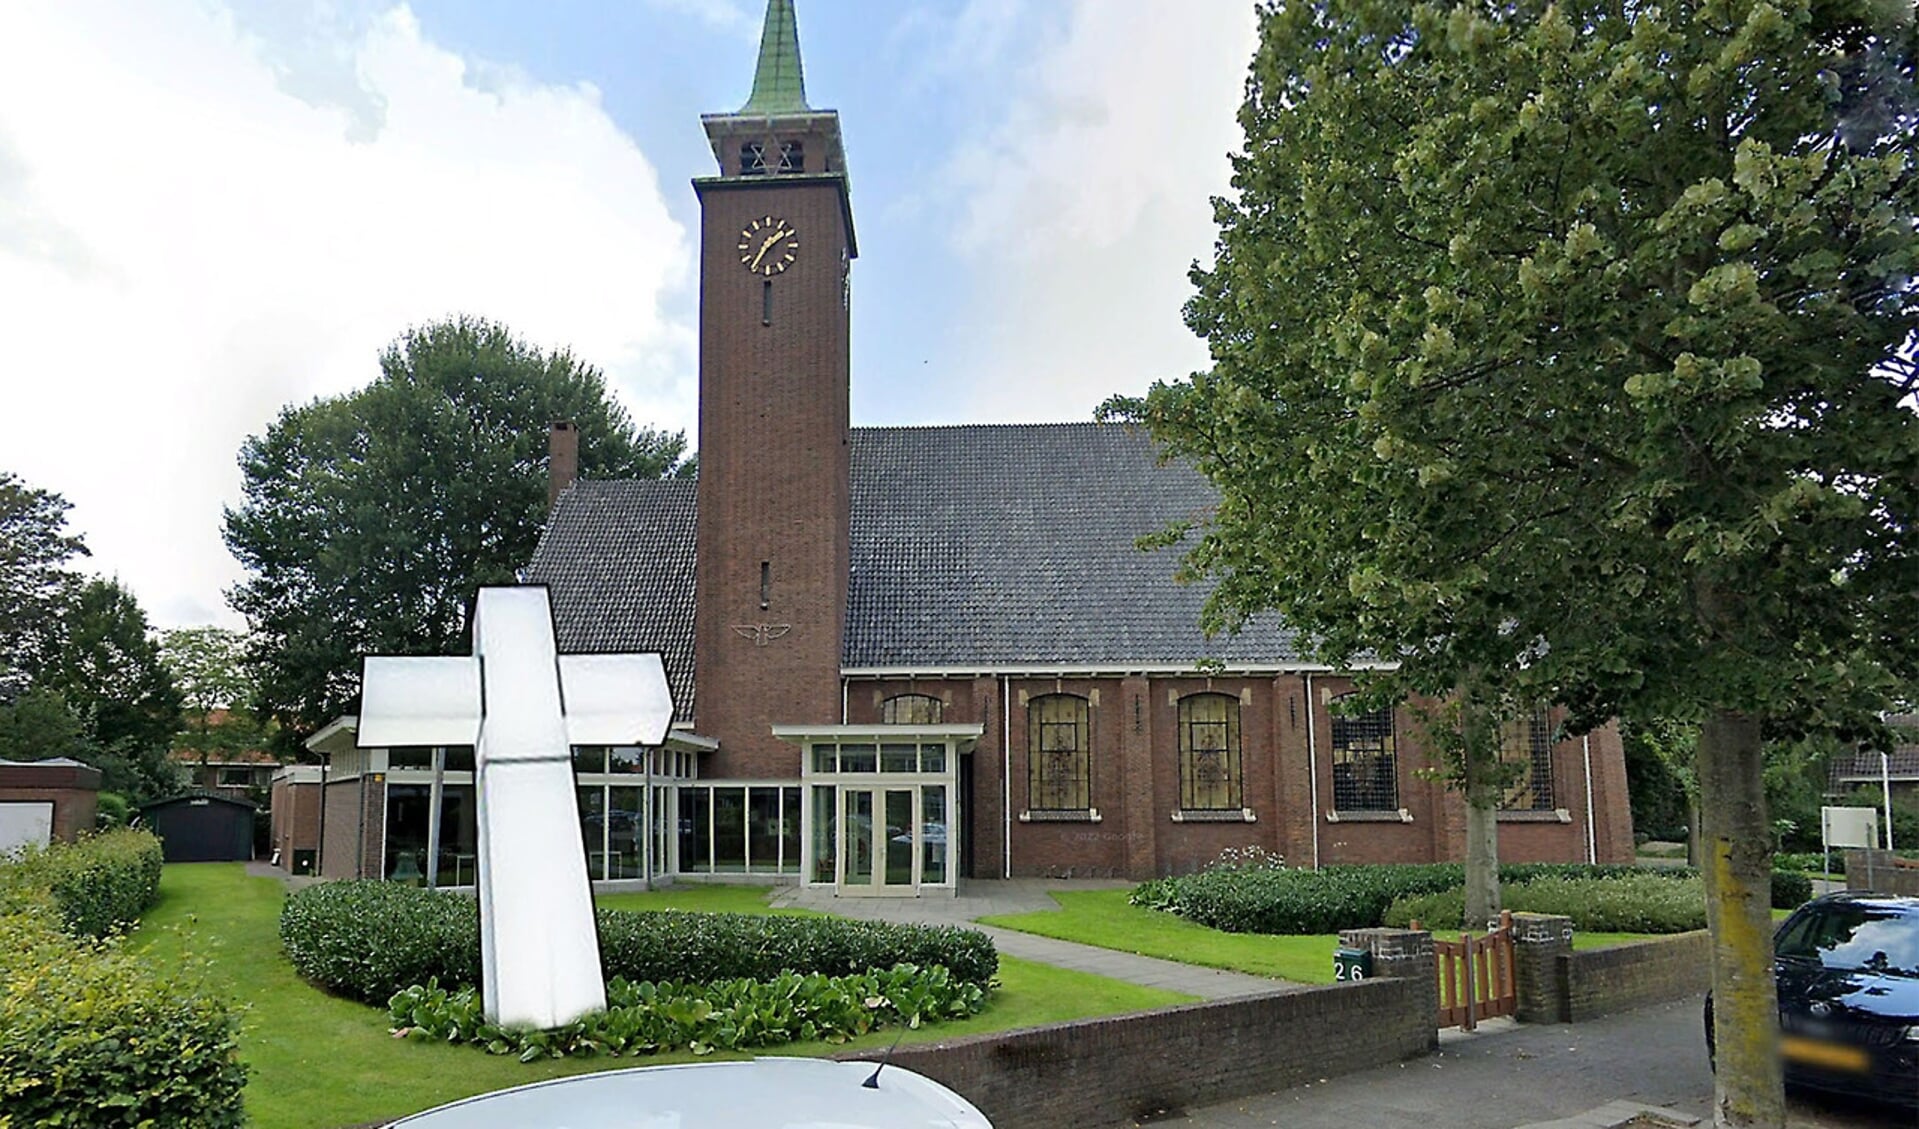 Volgende week woensdag 13 april is het Passionkruis in Vlaardingen. 